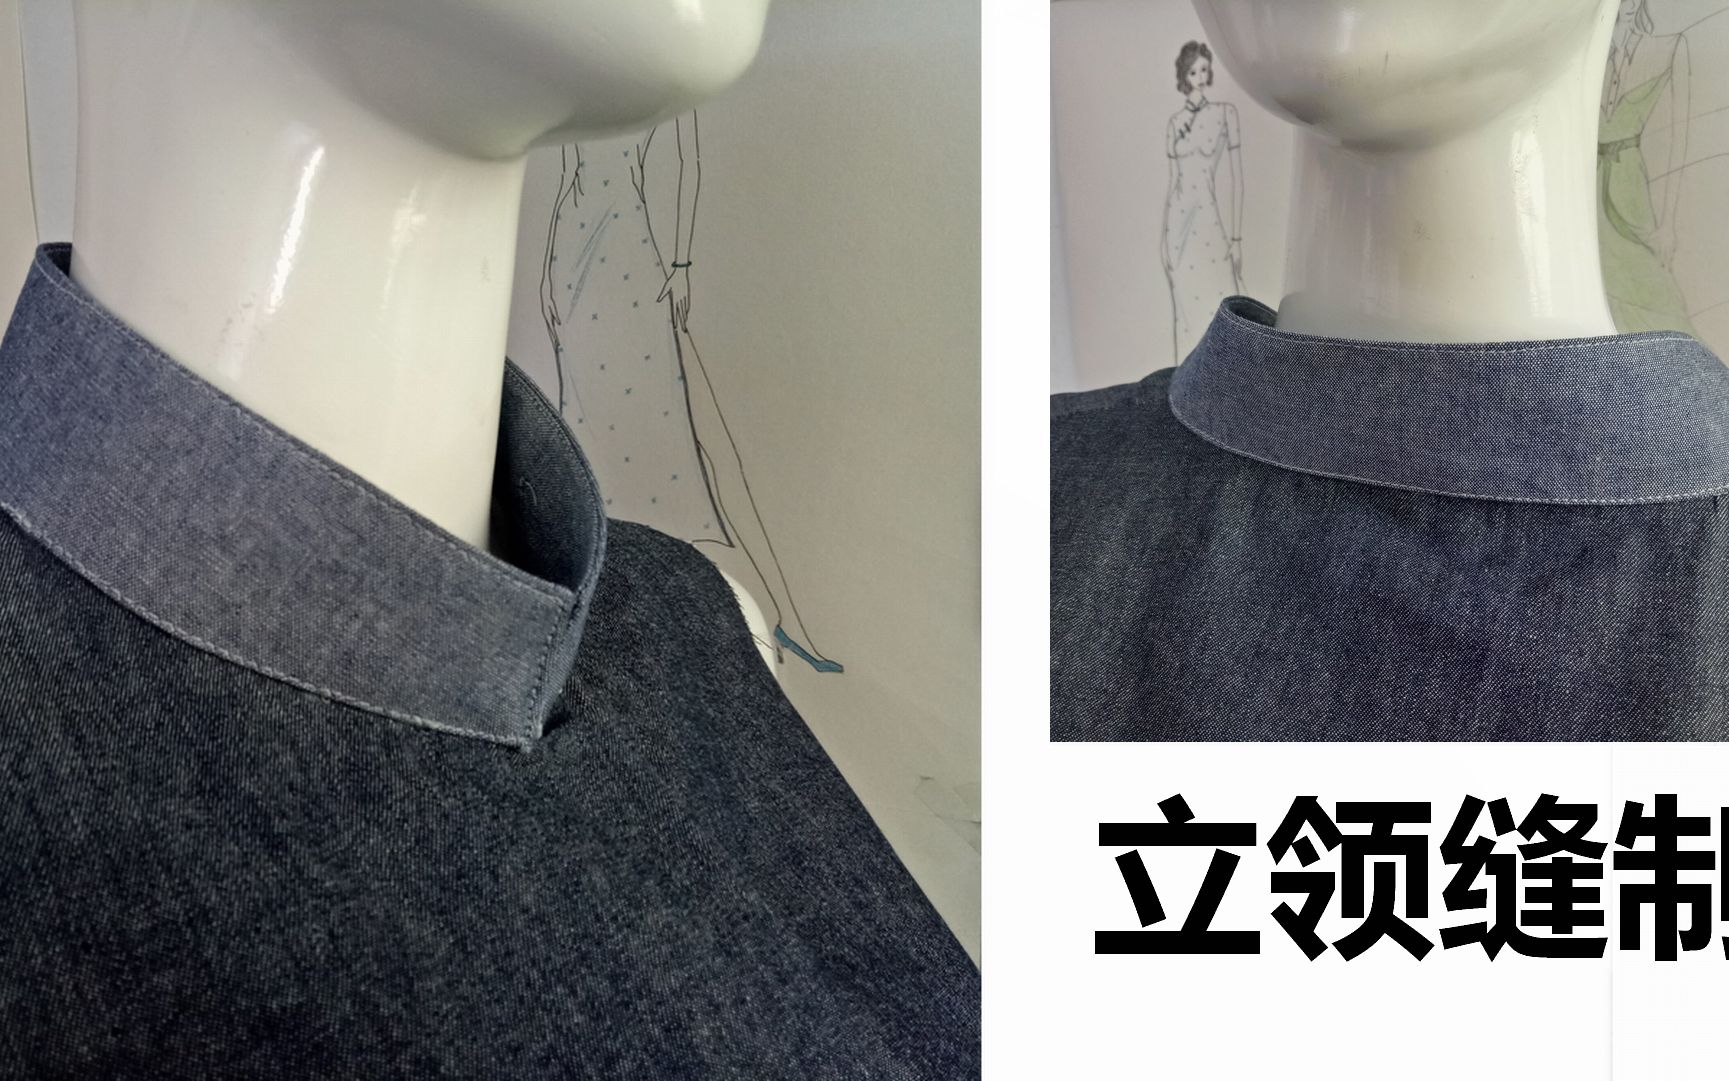 工艺流程解析 | 立领和翻领2种领型案例-服装设计-CFW服装设计网